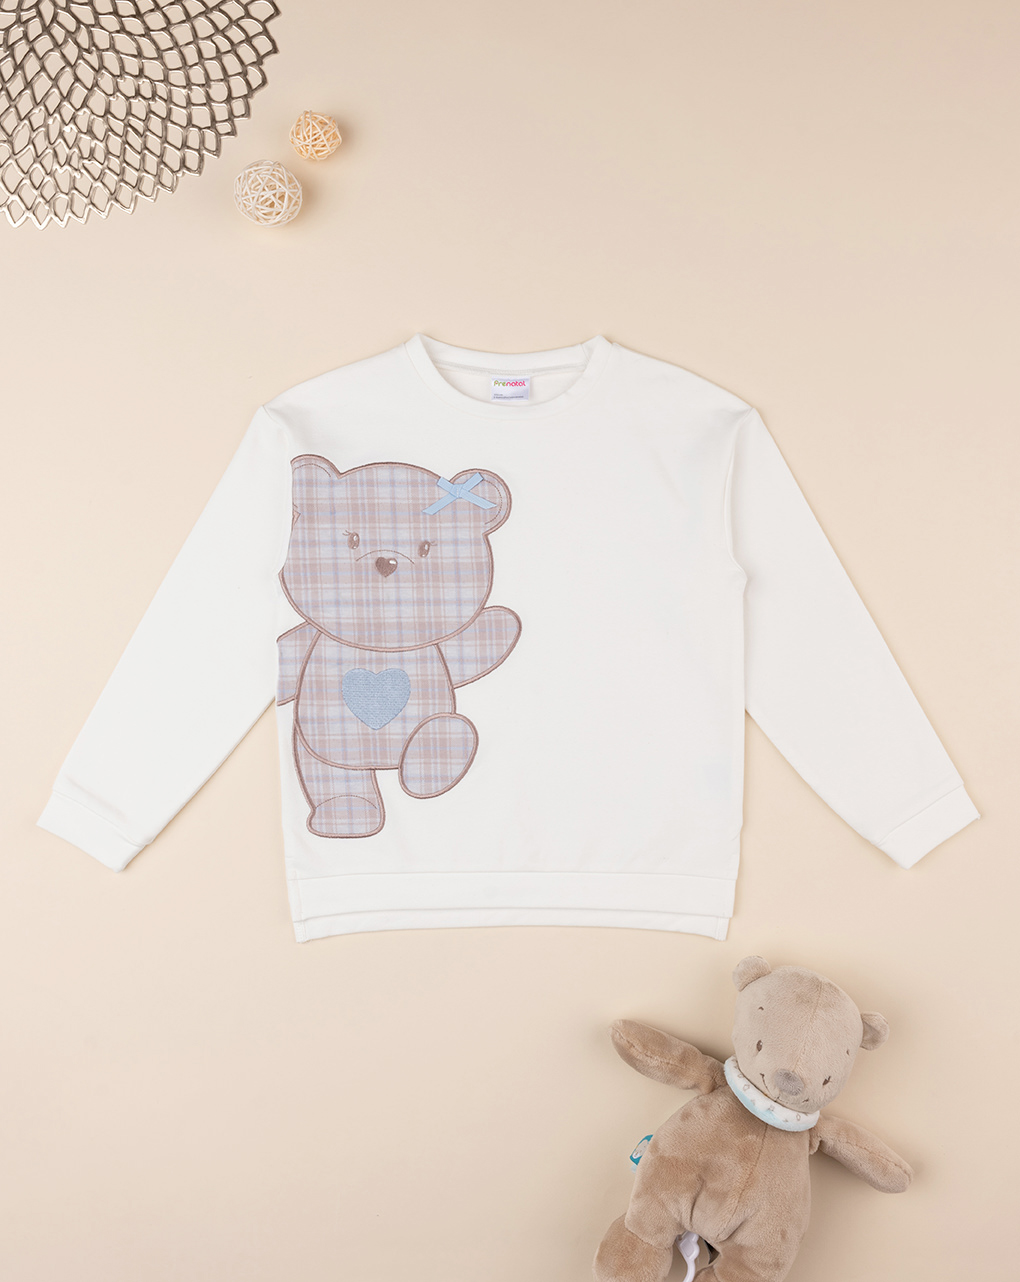 παιδική μπλούζα φούτερ λευκή με αρκουδάκι για κορίτσι